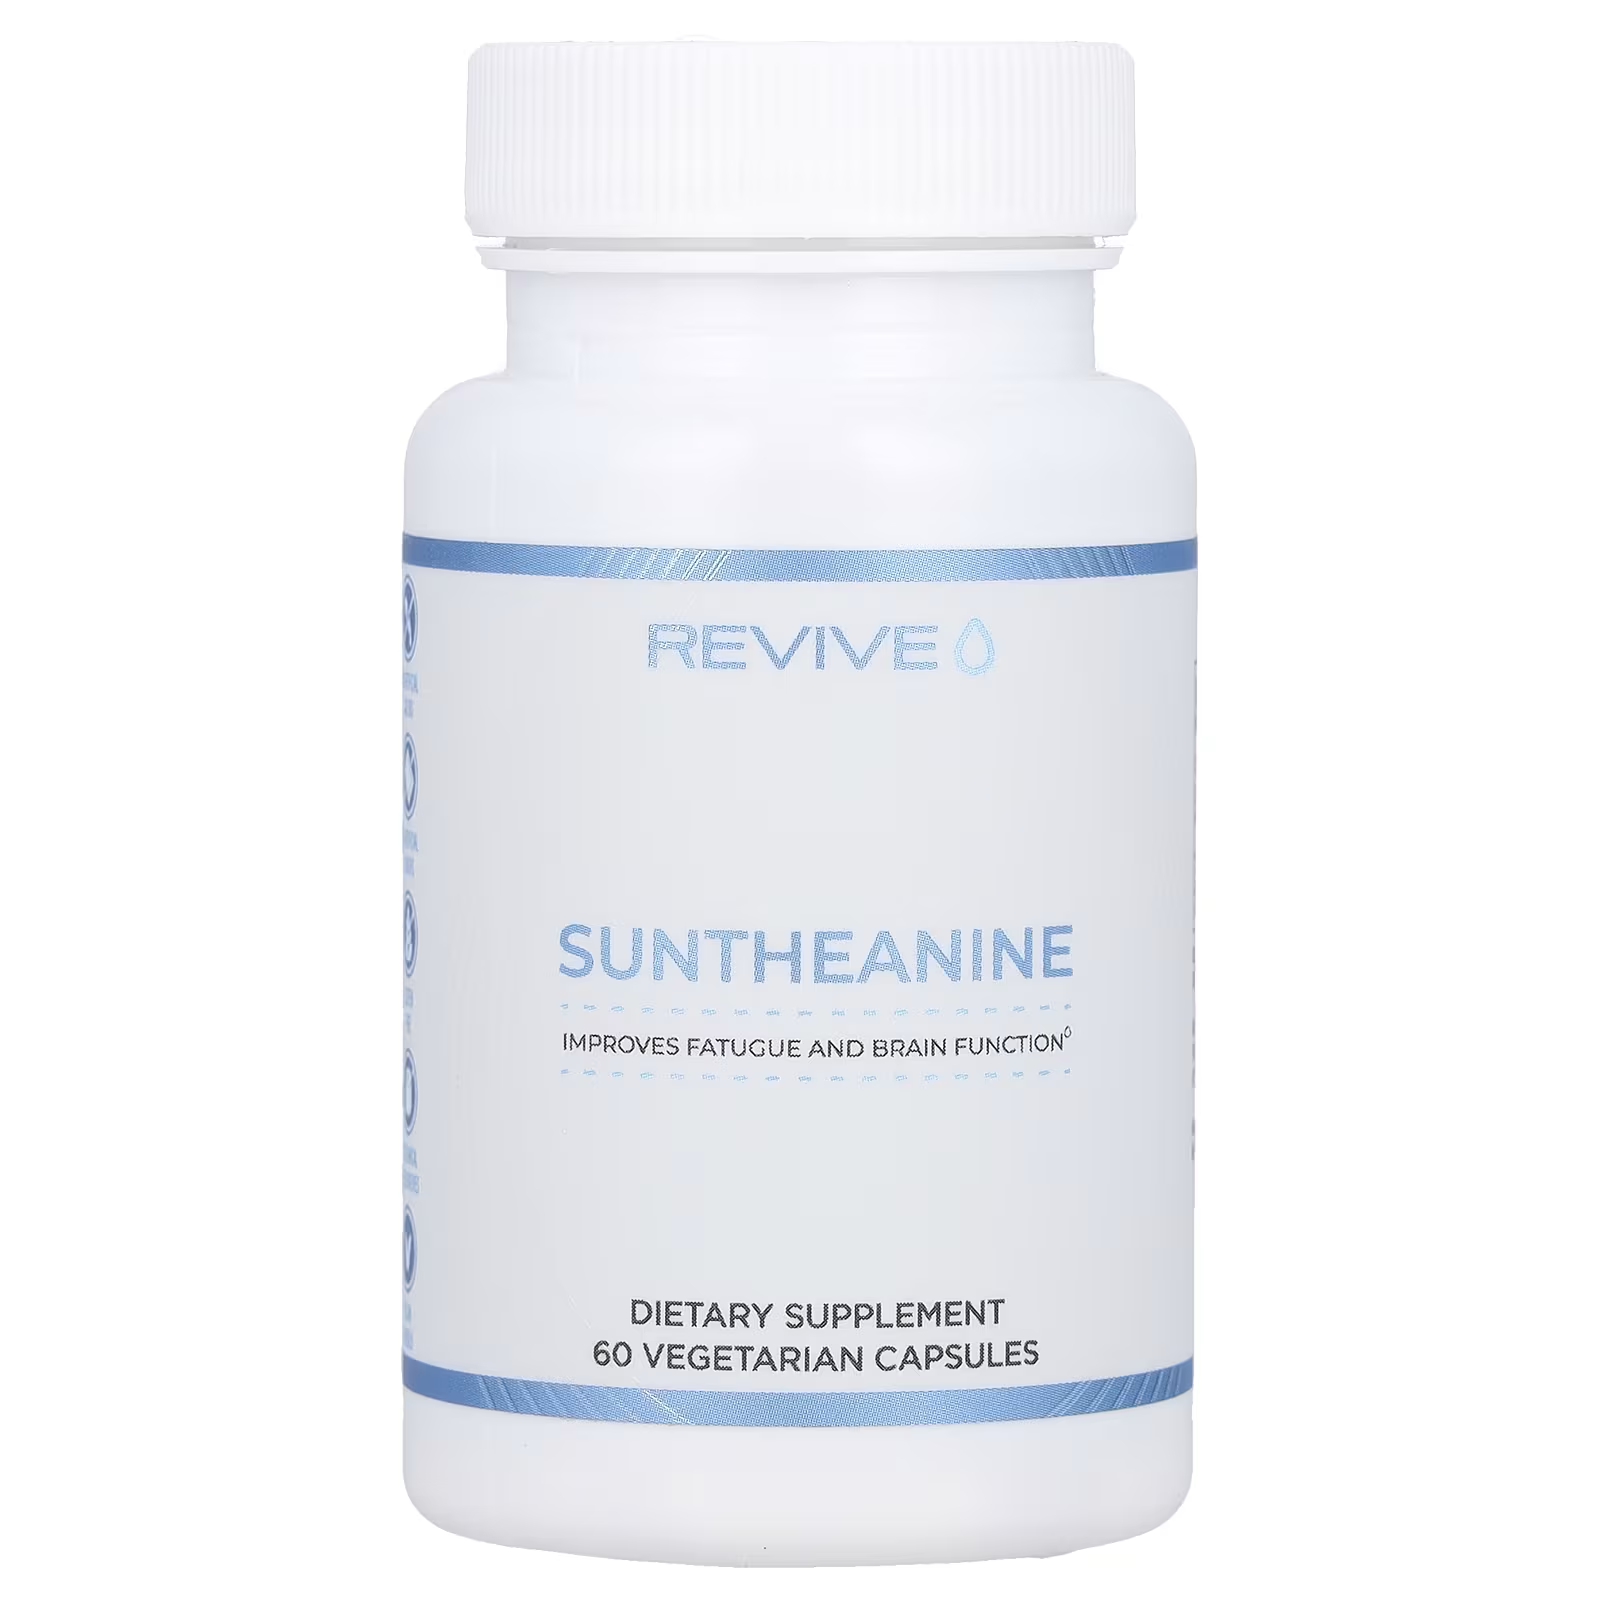 Пищевая добавка Revive Suntheanine улучшает работу мозга, 60 вегетарианских капсул пищевая добавка ketologic relax keto bhb suntheanine 60 капсул